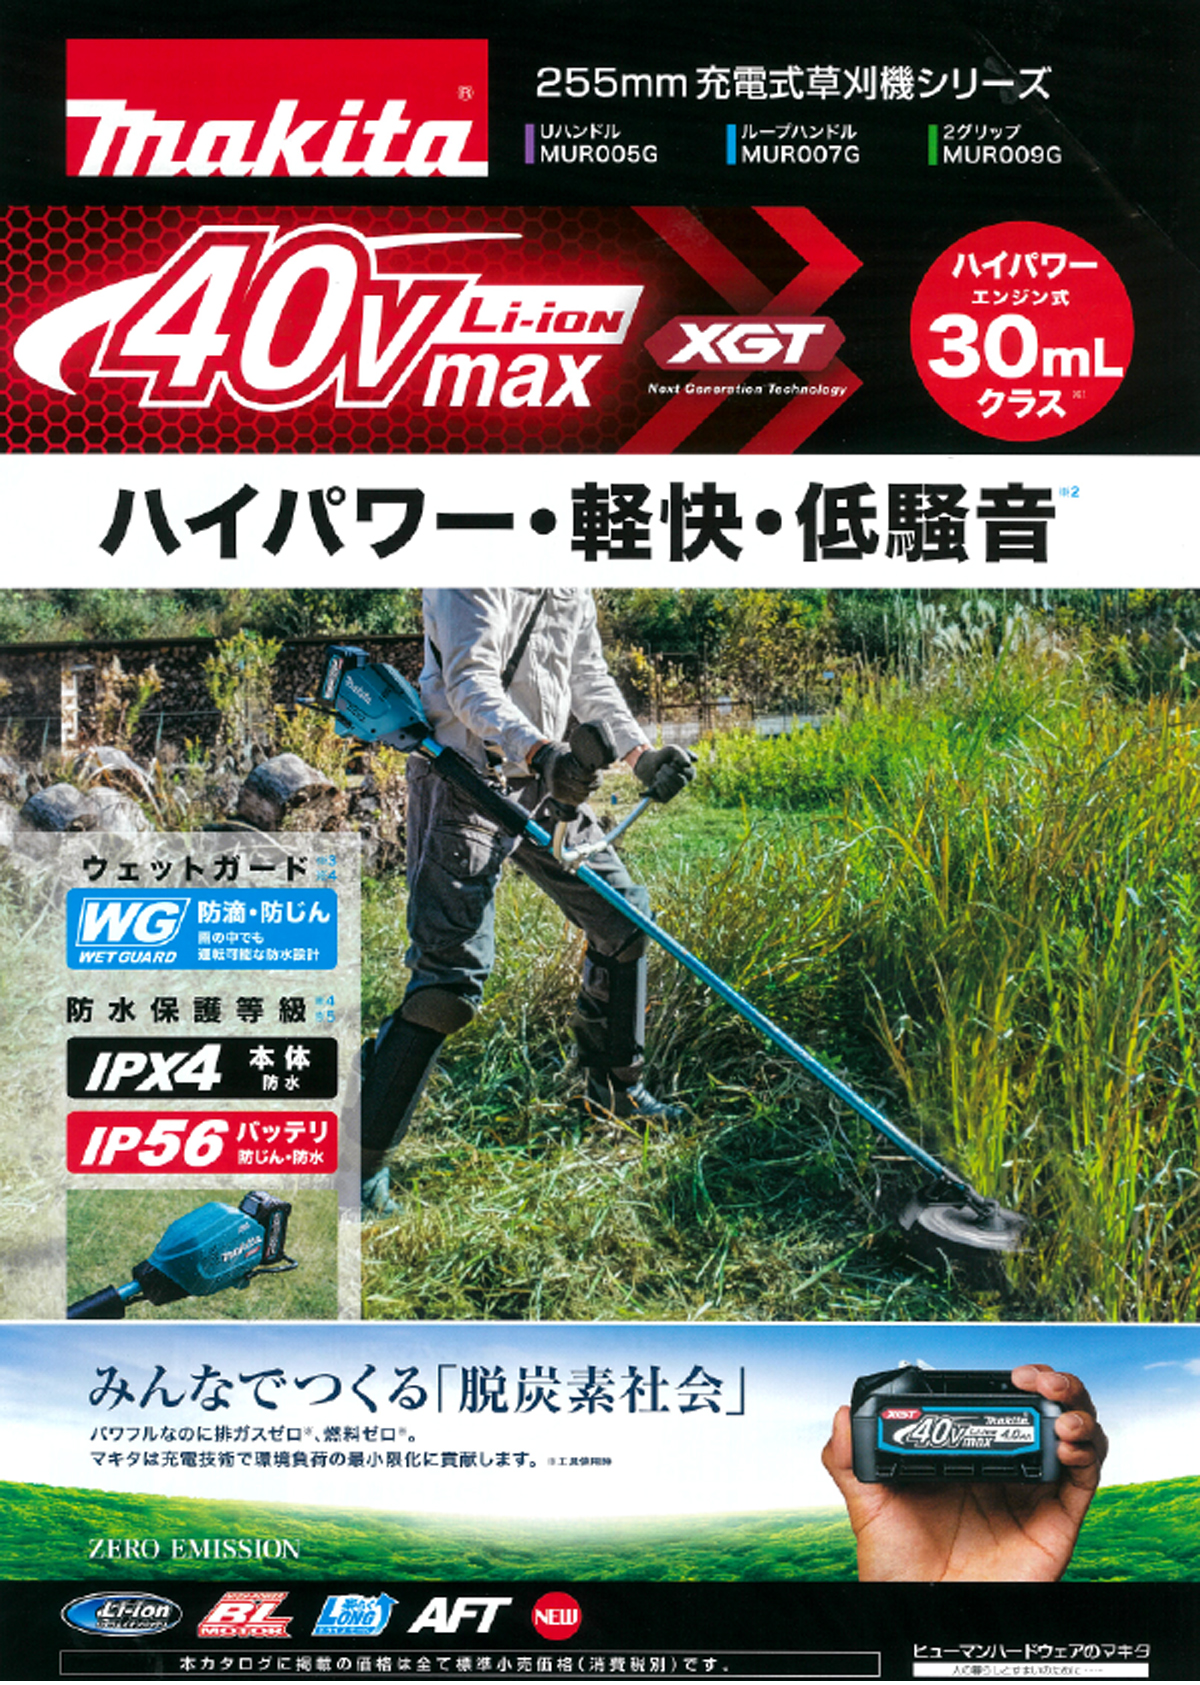 ☆マキタ MUR007GRM 40Vmax充電式草刈機(ループハンドル) ウエダ金物【公式サイト】